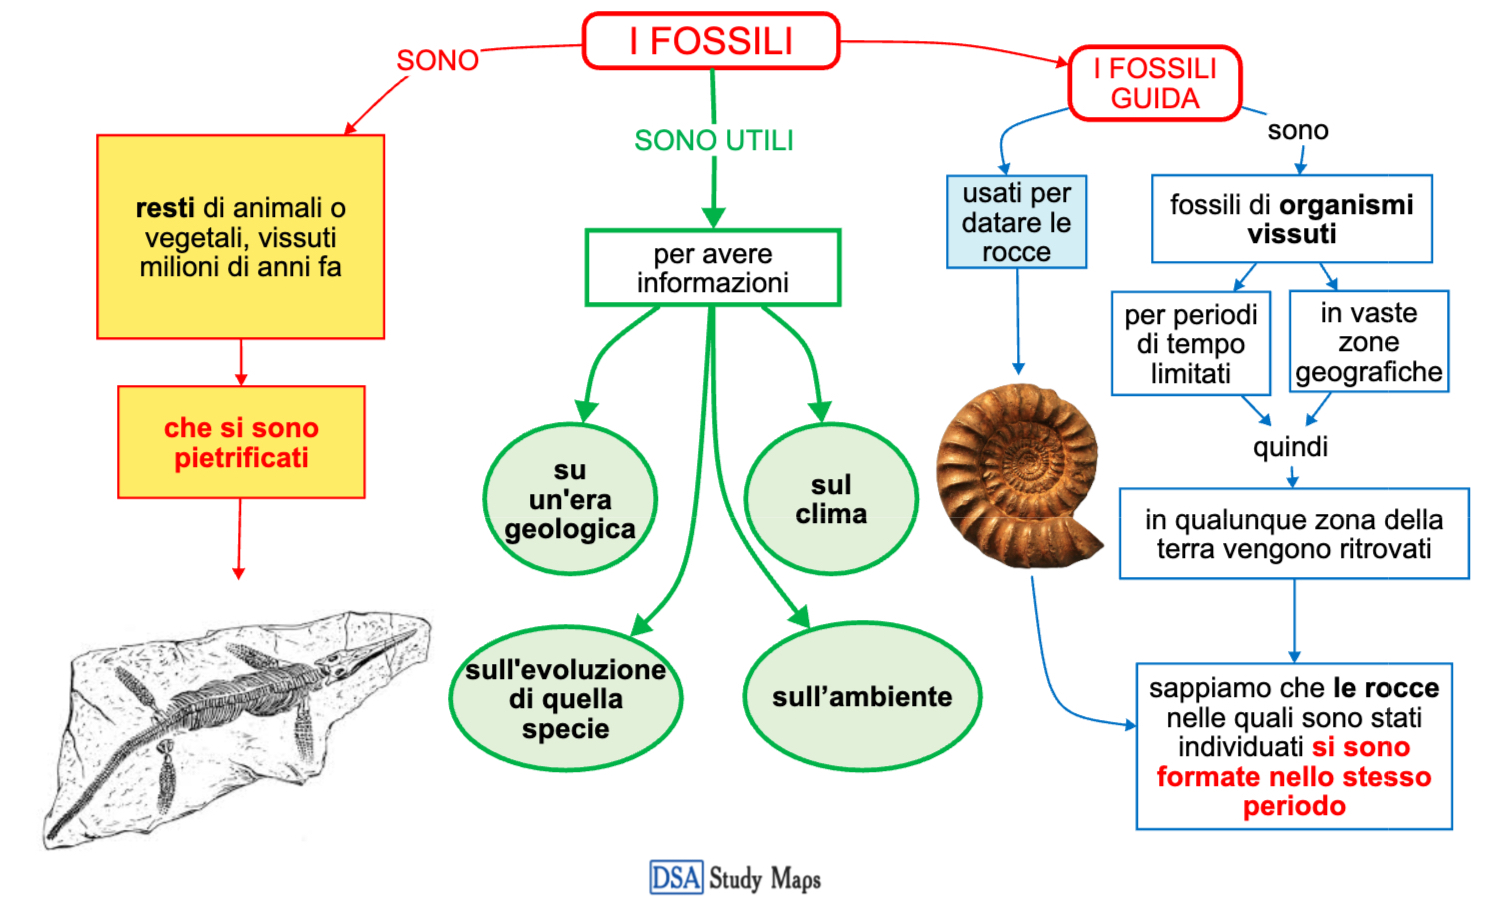 i fossili